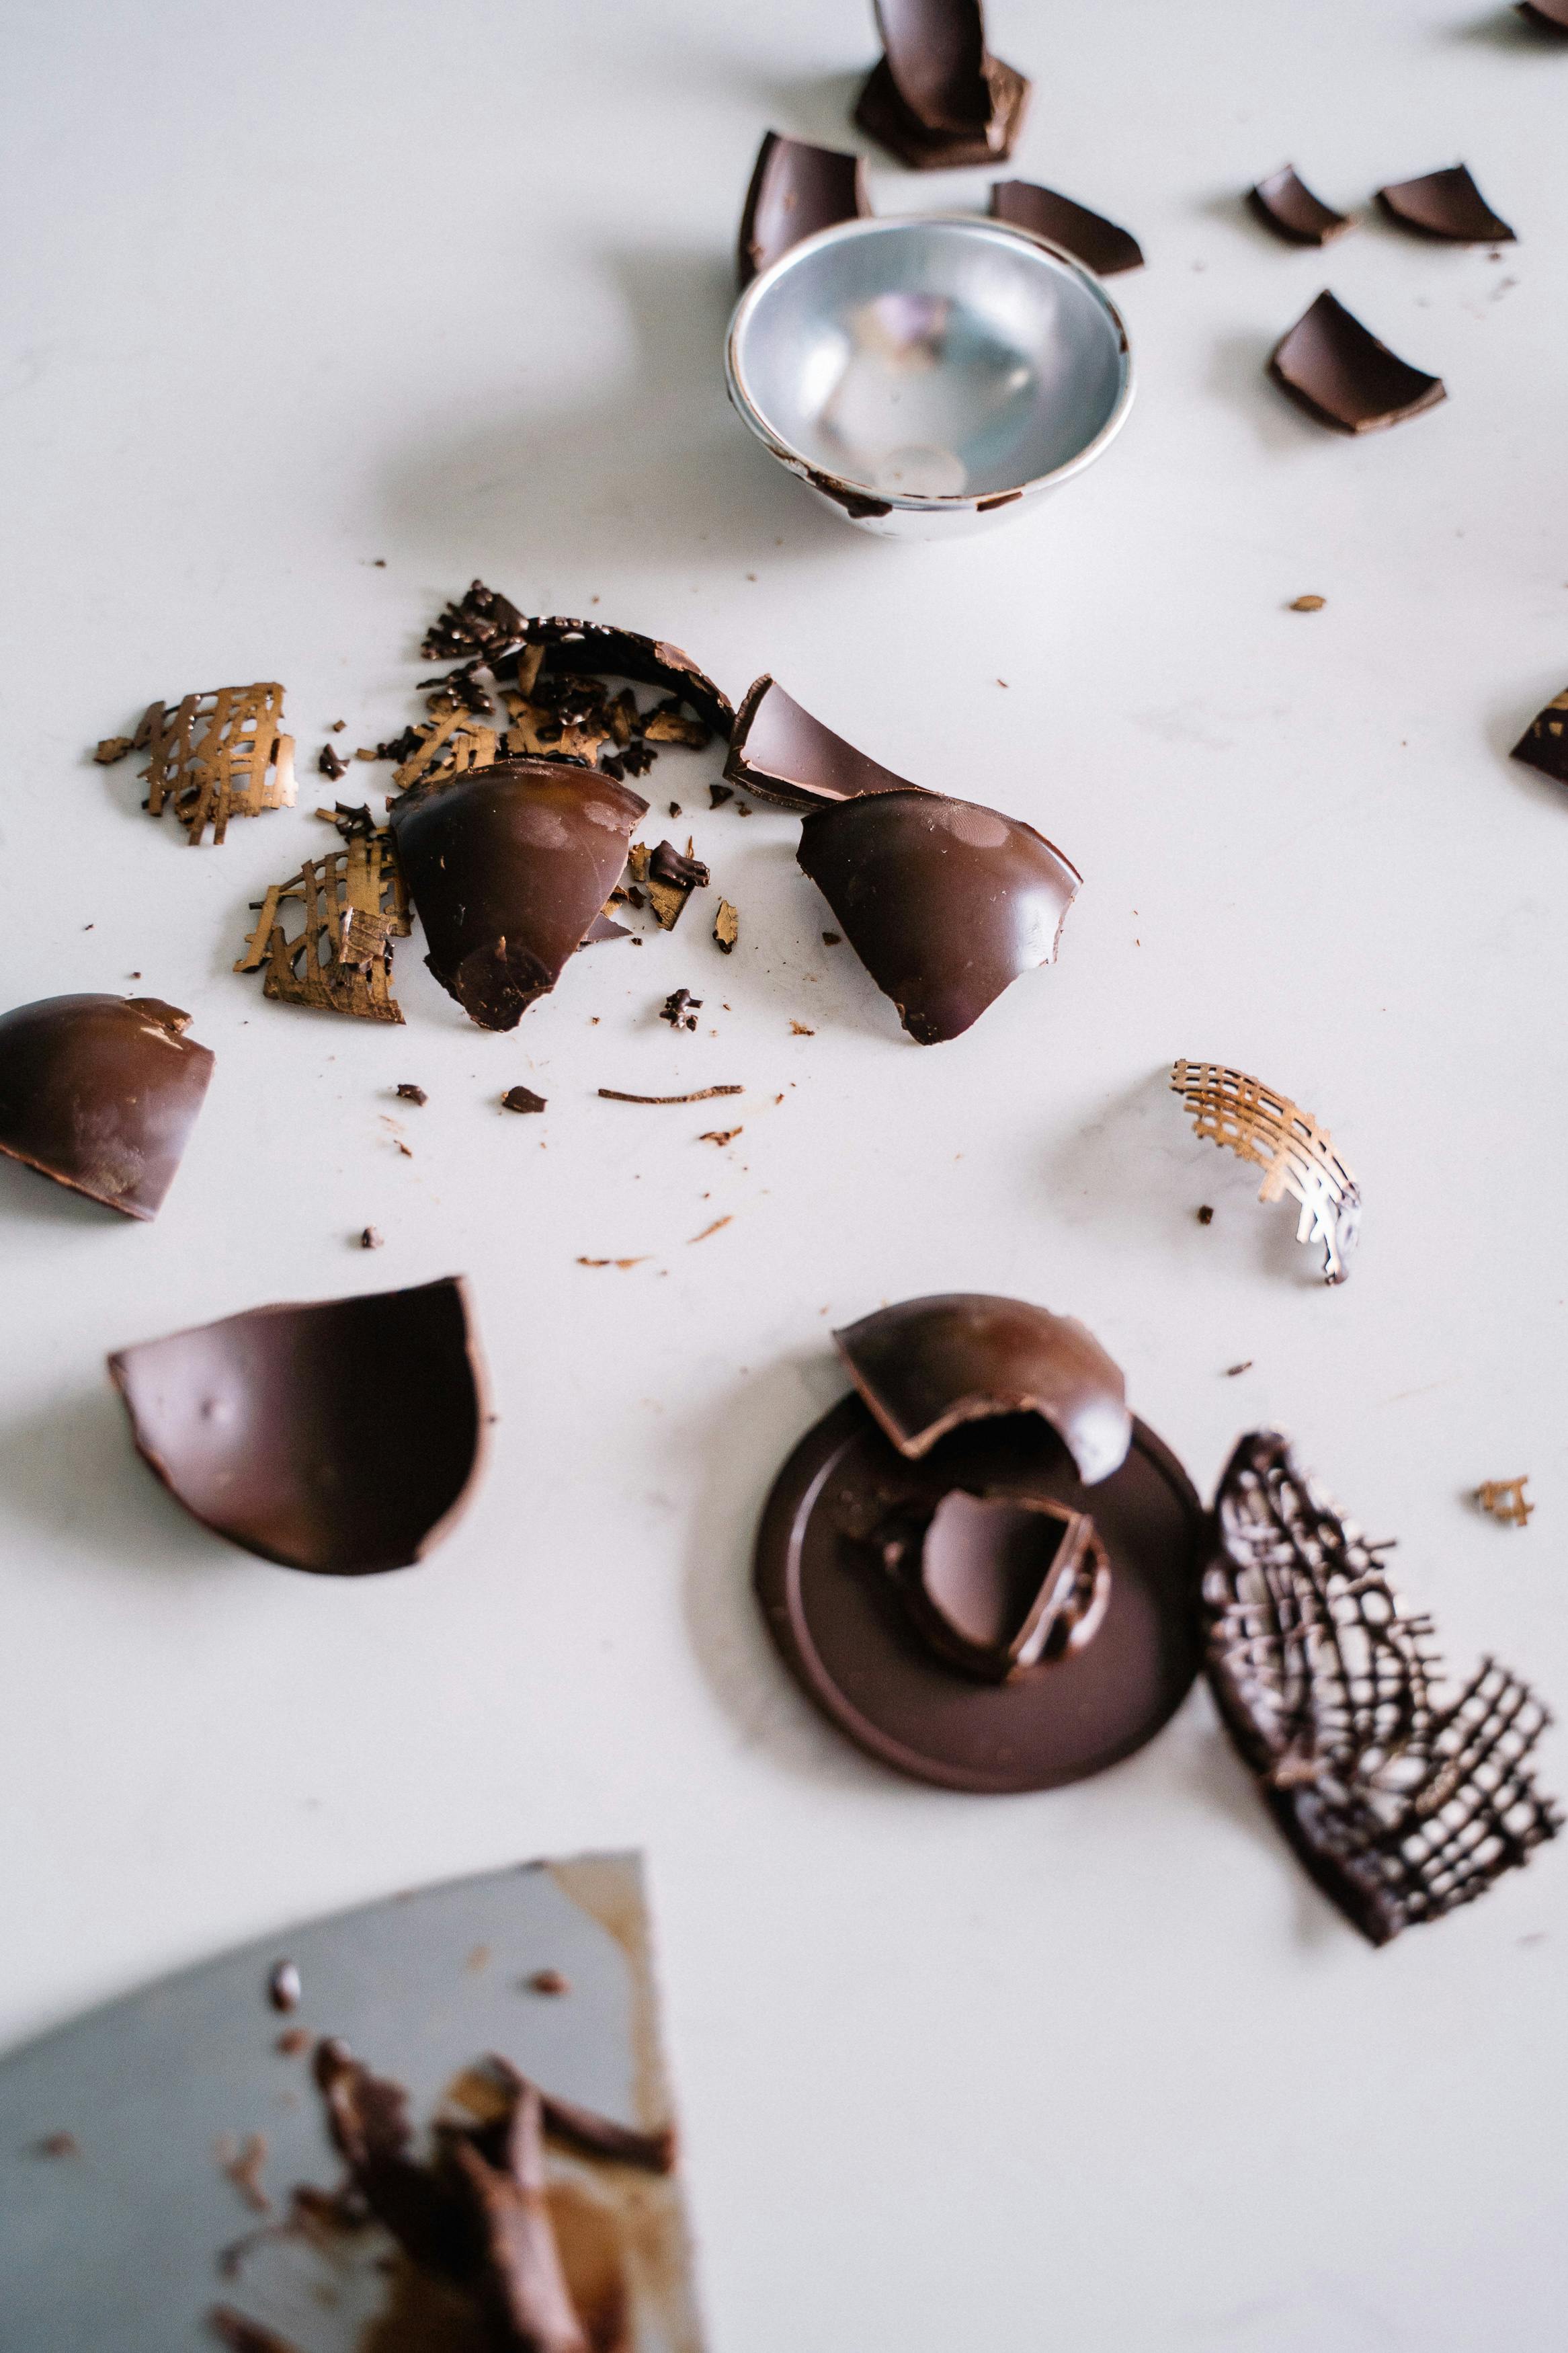 Bruine En Witte Chocolade Op Witte Keramische Plaat · gratis stockfoto